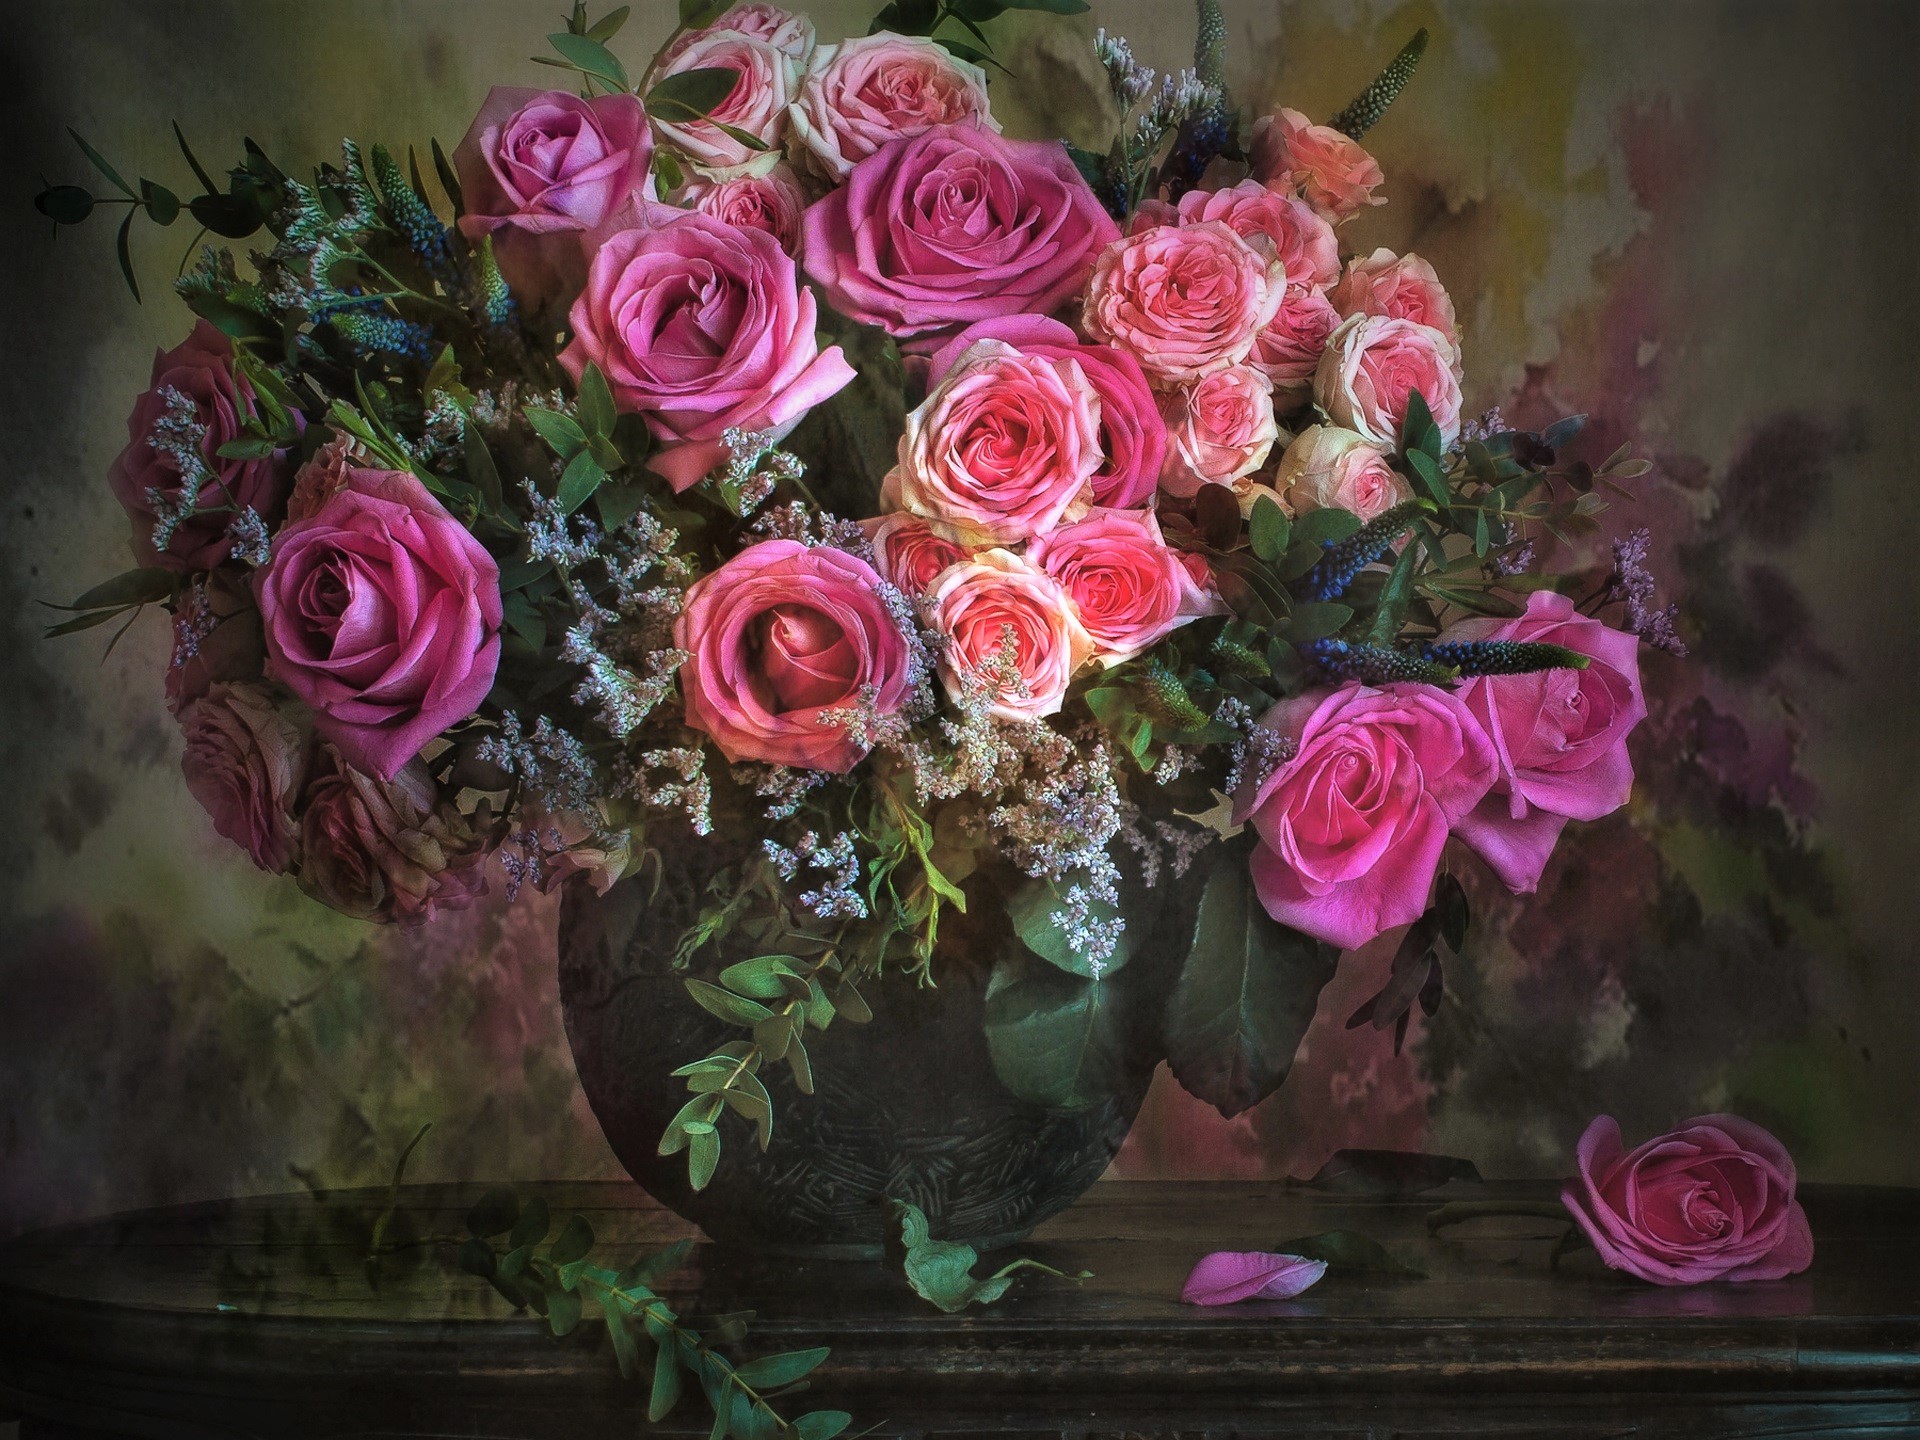 Скачать обои бесплатно Натюрморт, Цветок, Роза, Ваза, Фотографии, Розовый Цветок картинка на рабочий стол ПК